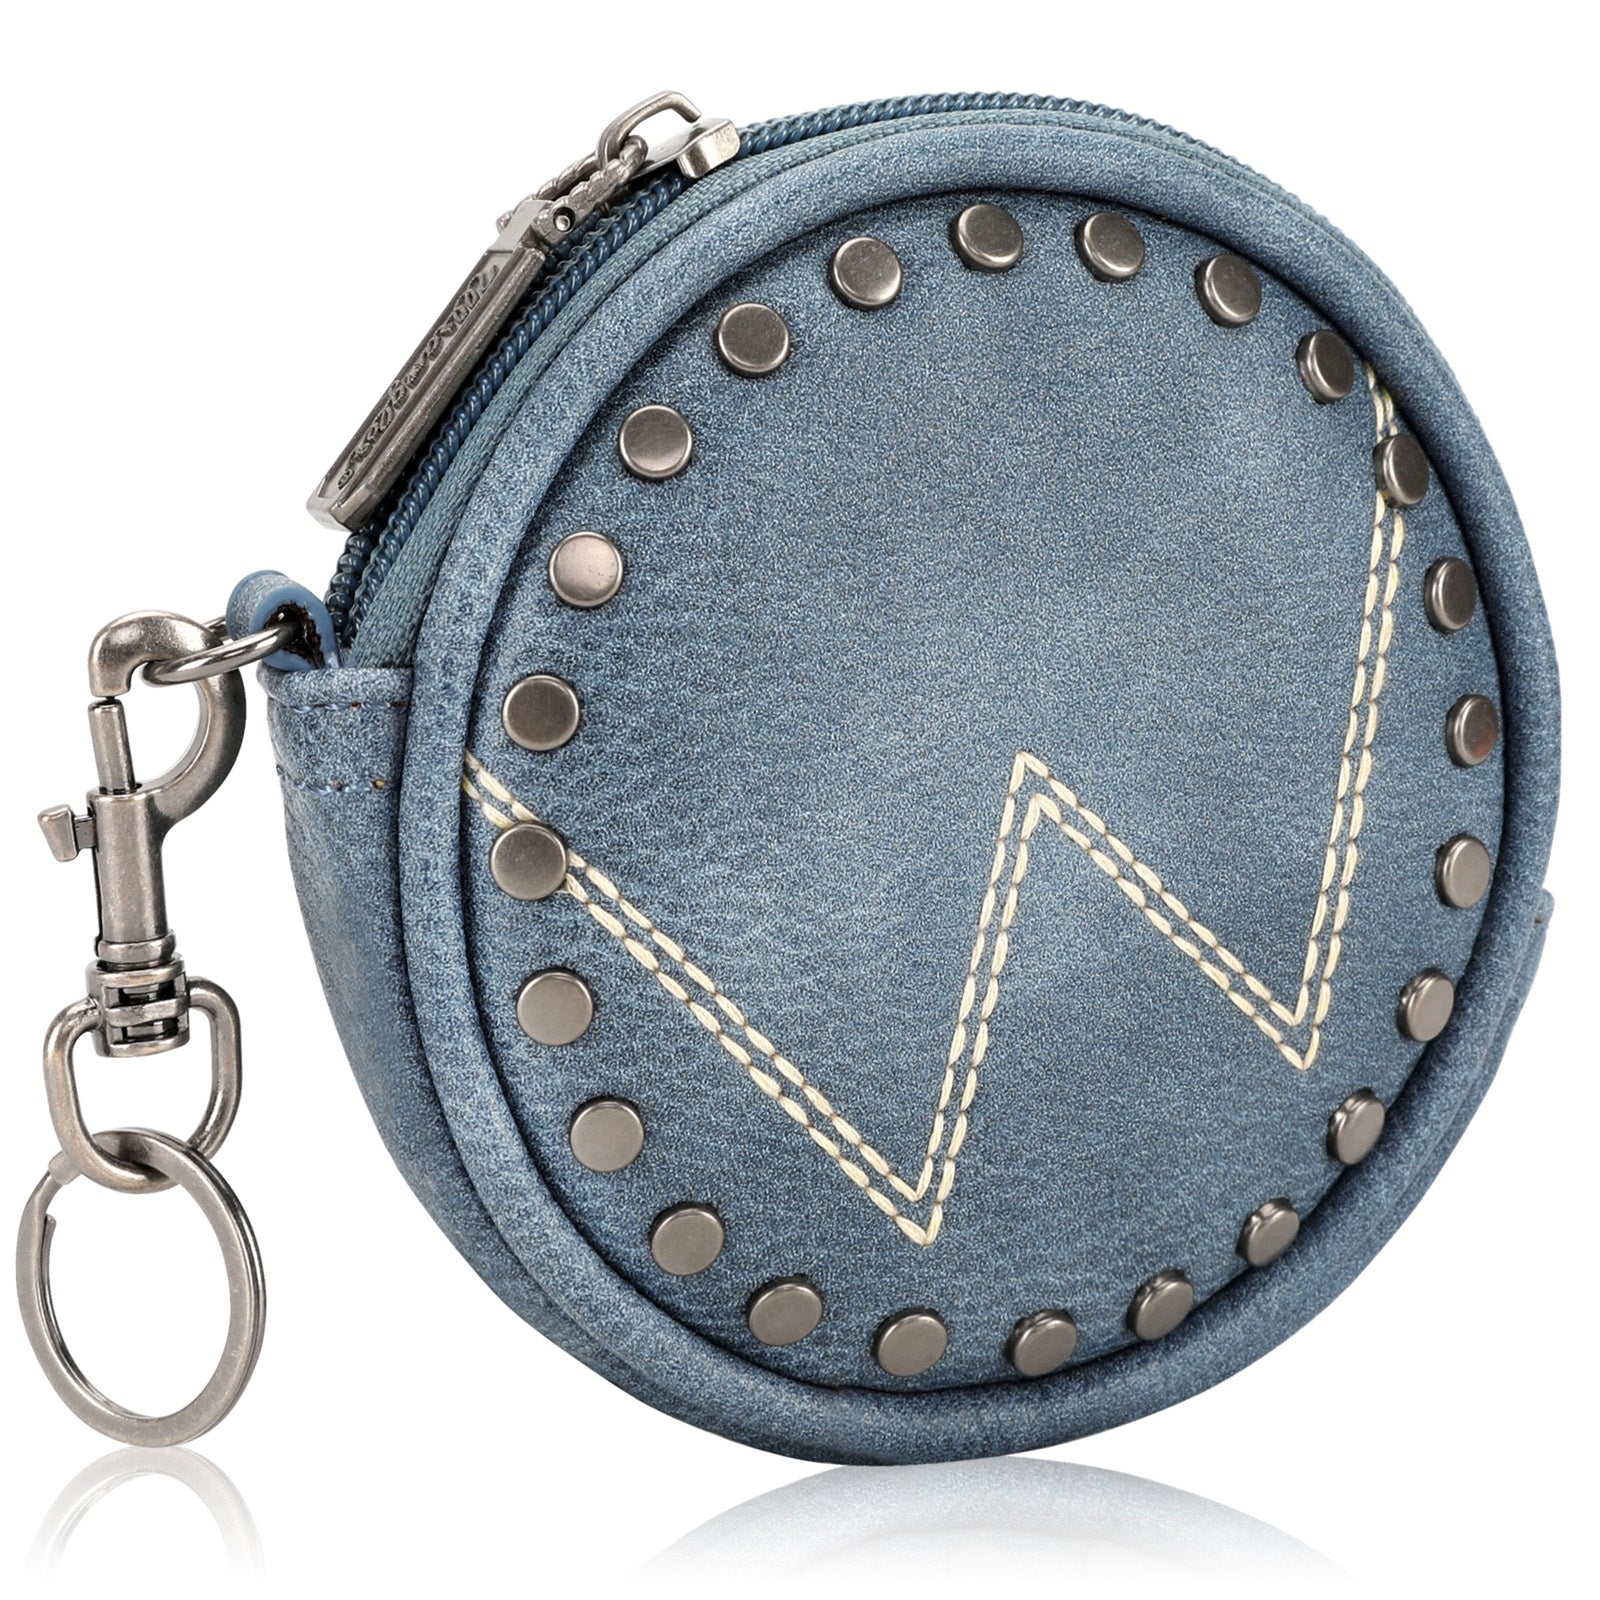 Wrangler Circular Coin Pouch "W" Logo  Bag Charm